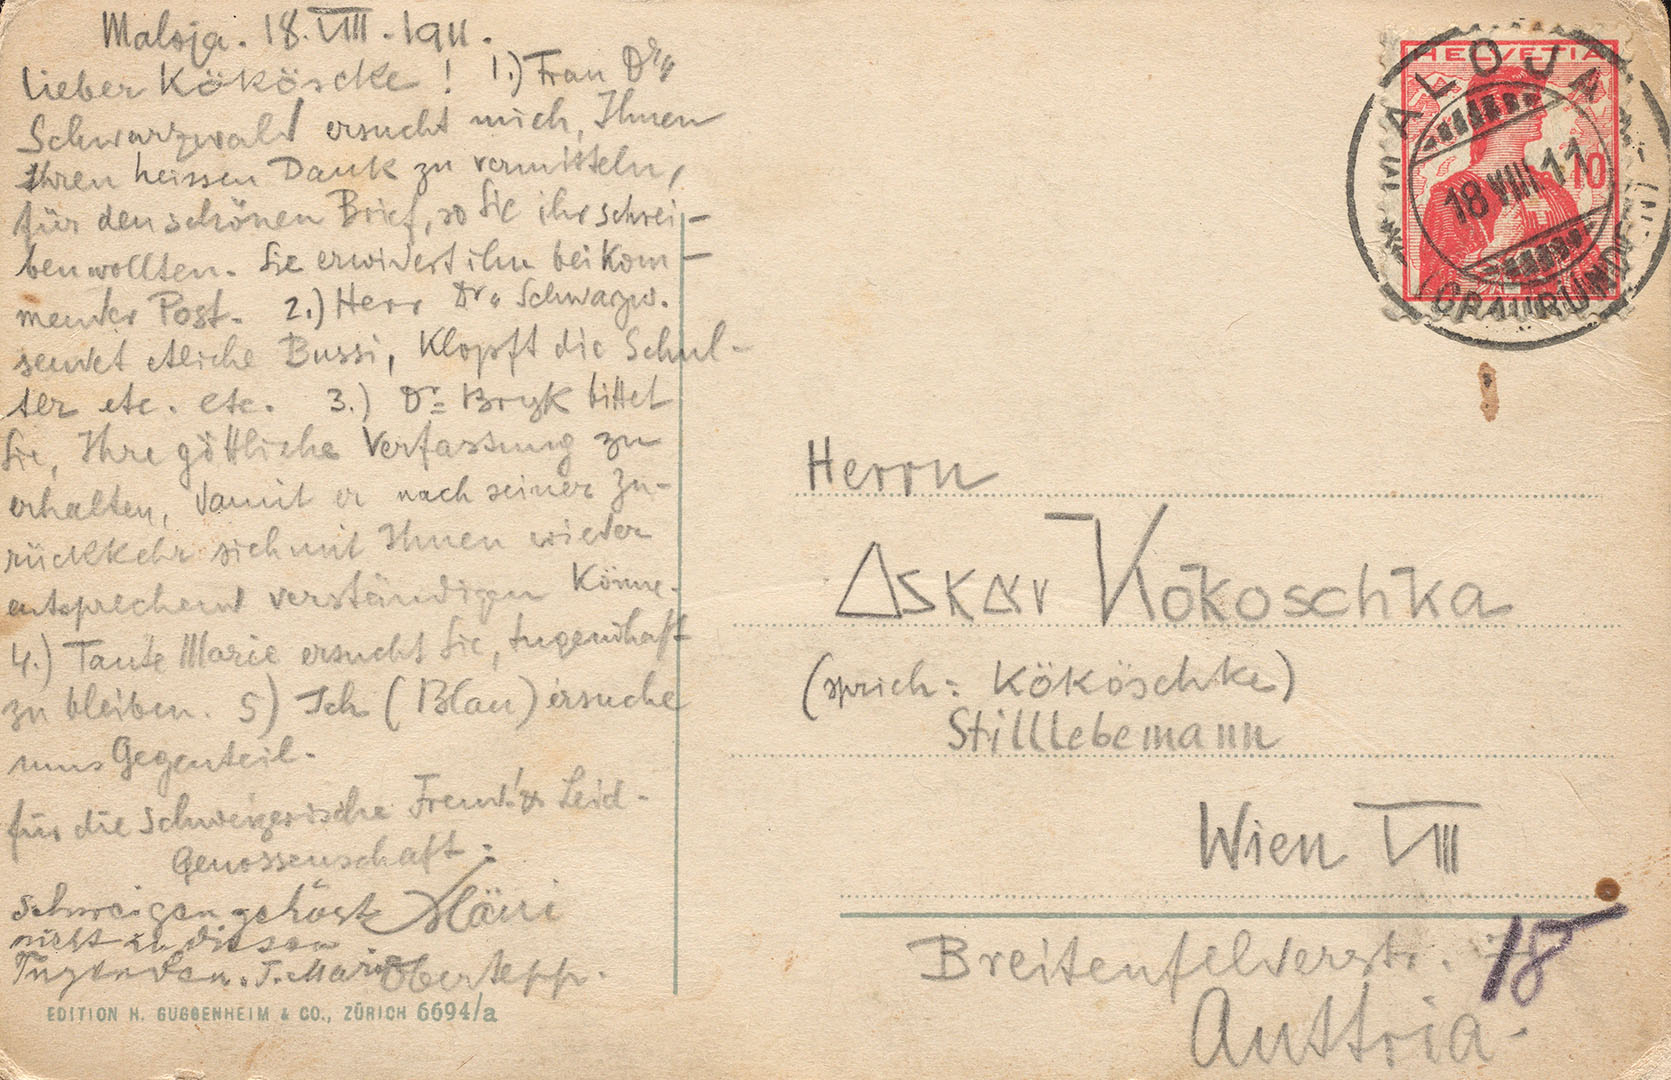 Greetings card from the “Schweizerische Freud- & Leidgenossenschaft” to “Kököschke Stilllebemann” in Vienna, 1911 (ZBZ, estate of O. Kokoschka 482.37)